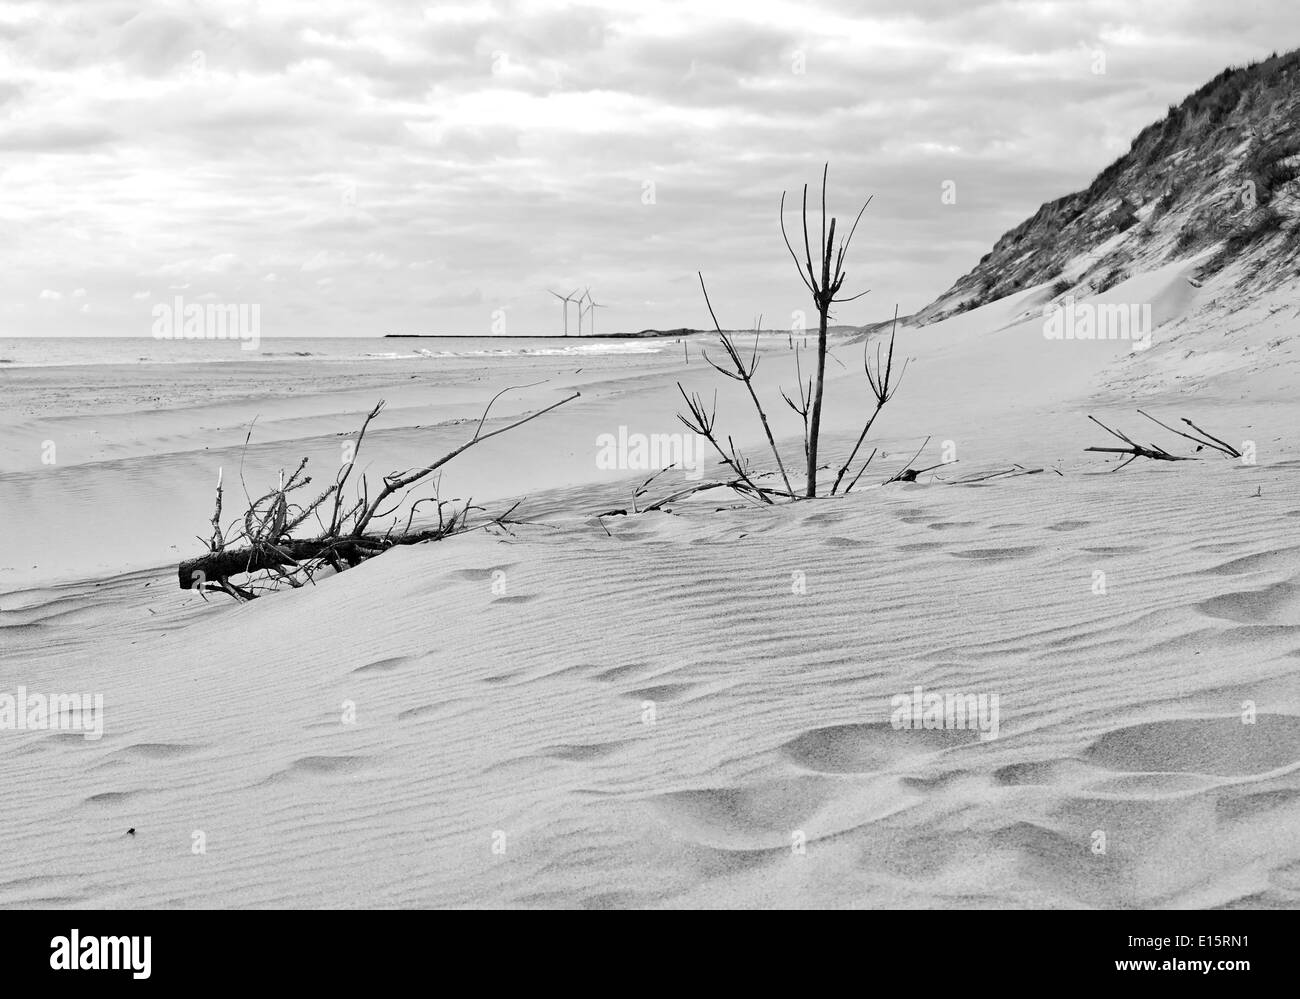 Spiaggia di sabbia in Danimarca in Hvide Sande i dintorni della città Foto Stock